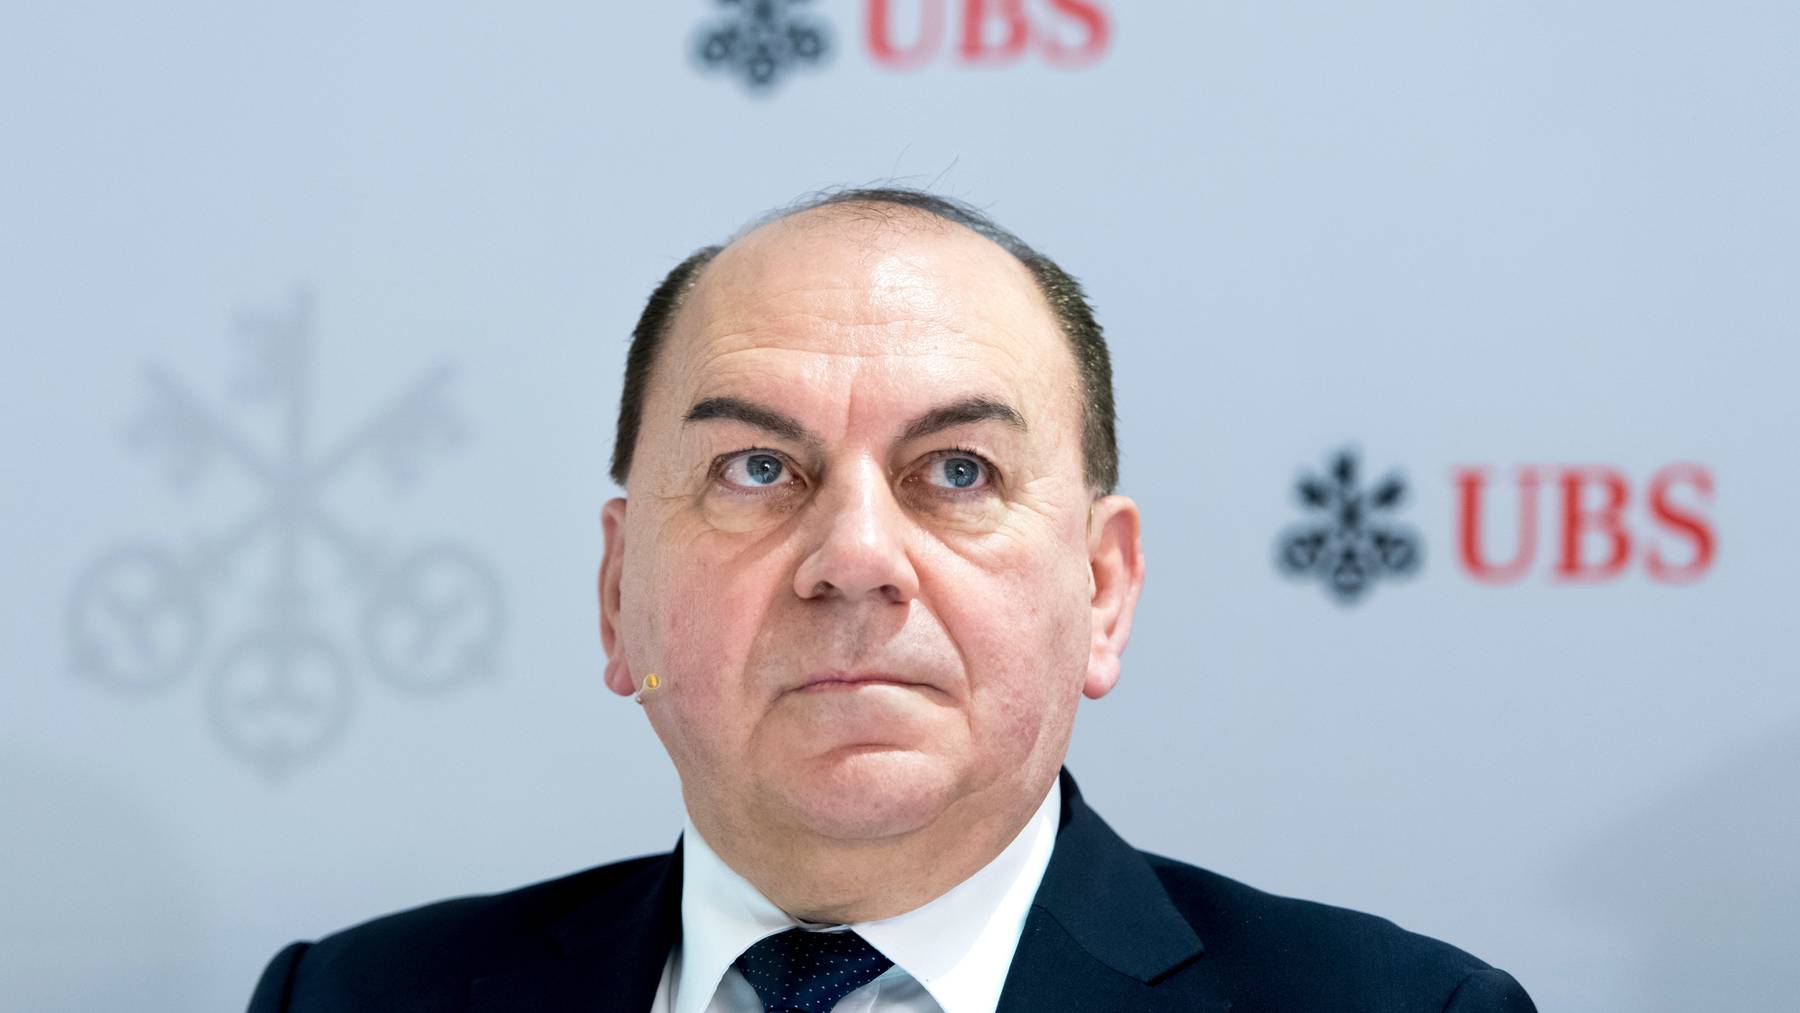 Die Amtszeit von UBS-Präsident Axel Weber endet 2022. Wer sein Nachfolger wird, ist noch nicht bekannt.